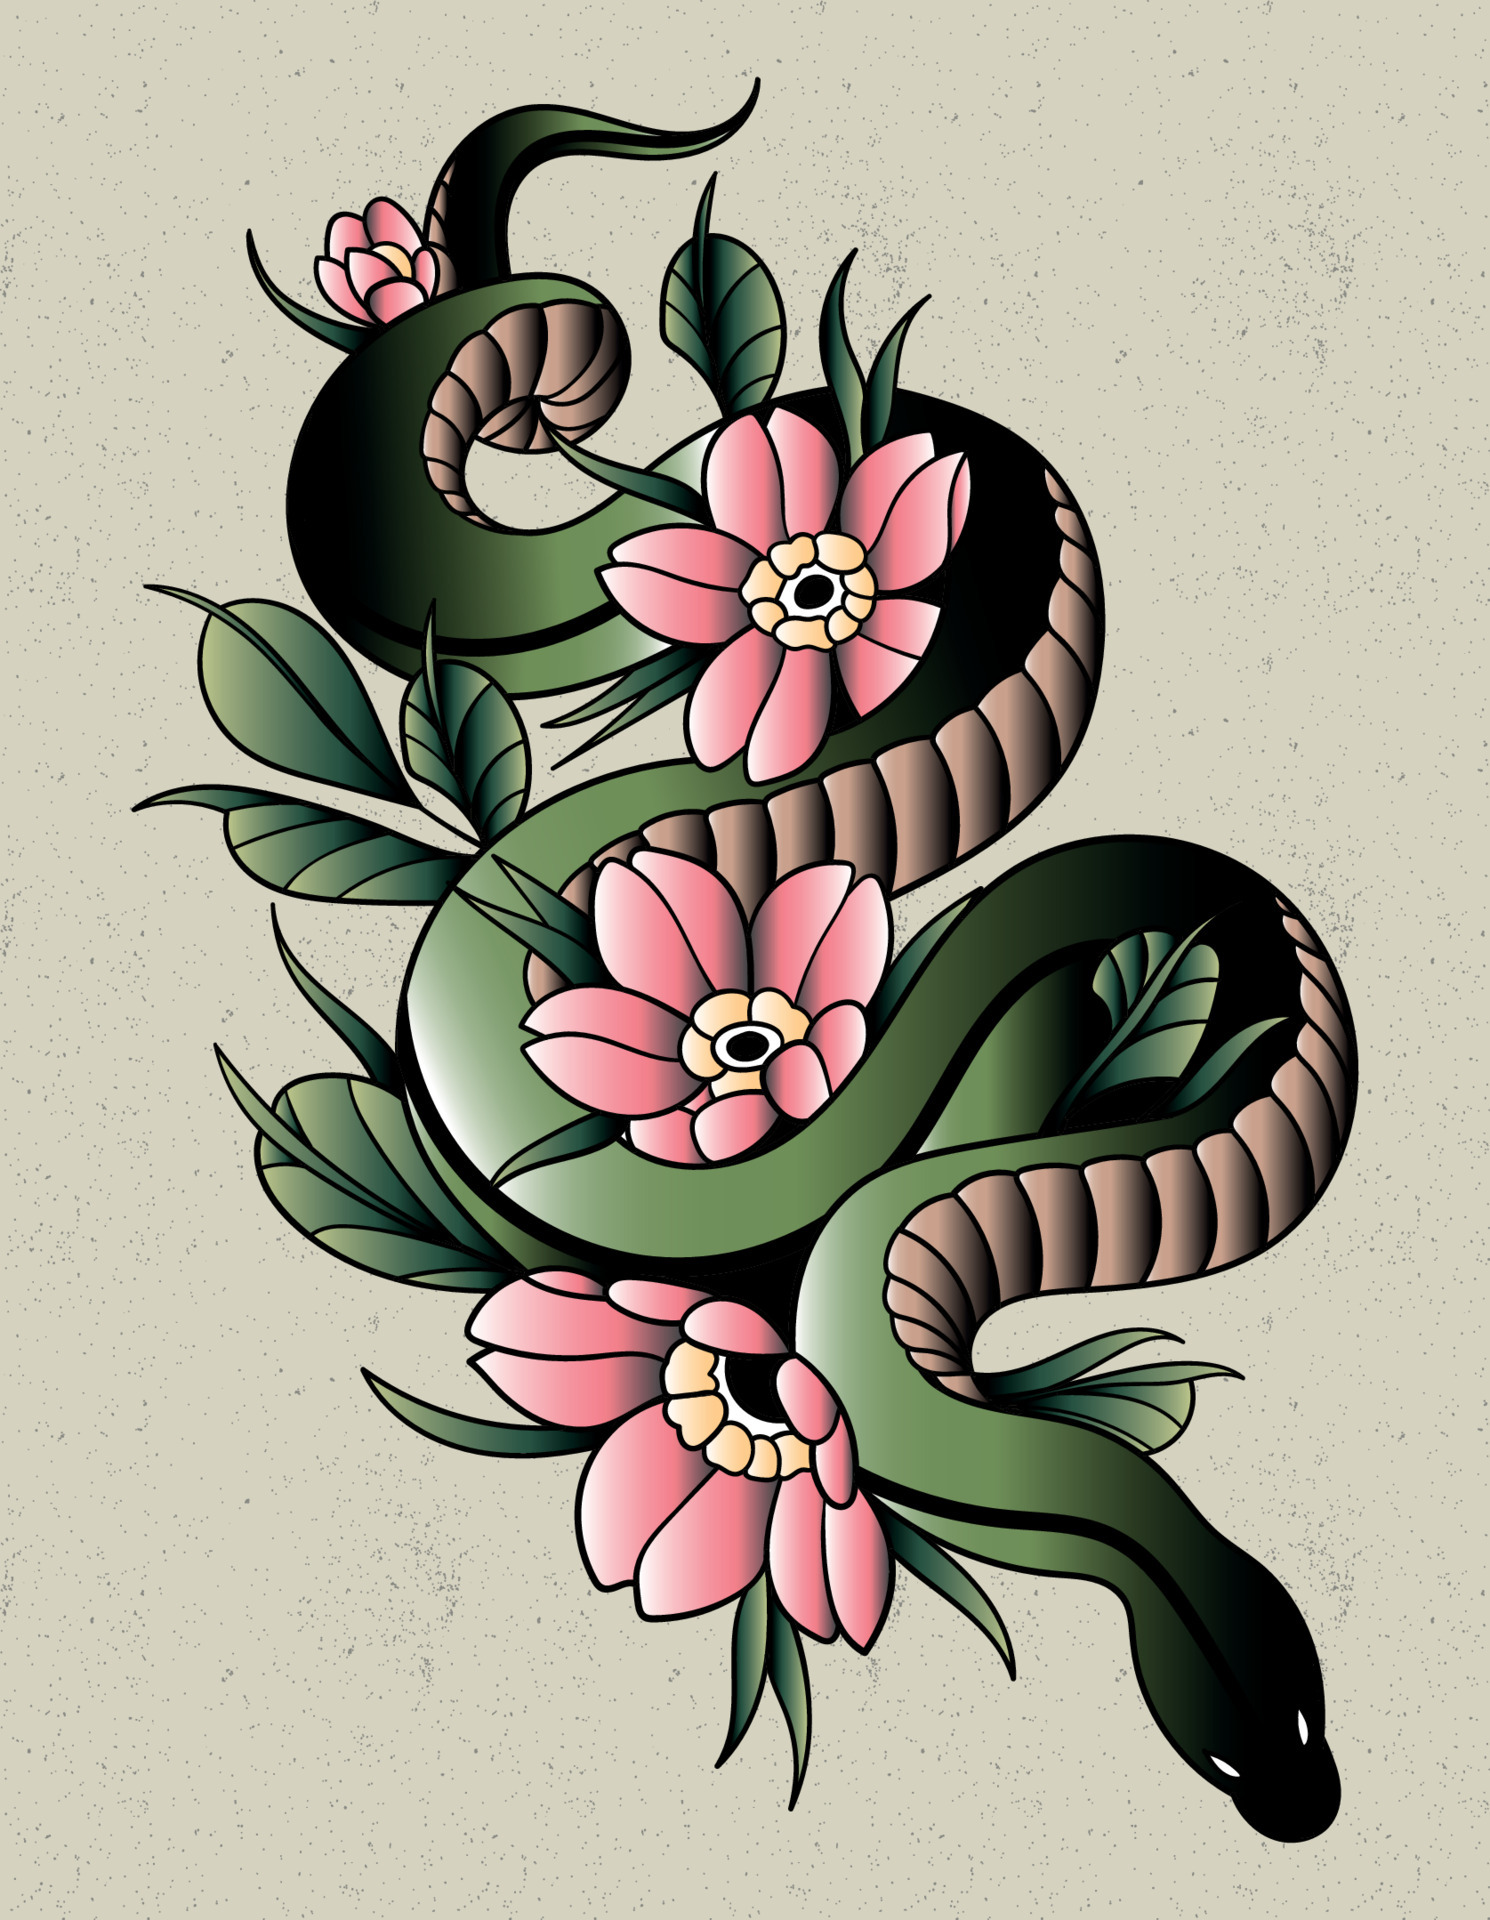 japanese snake  japanese sun and snake tattoo  Tasi Melah  Flickr